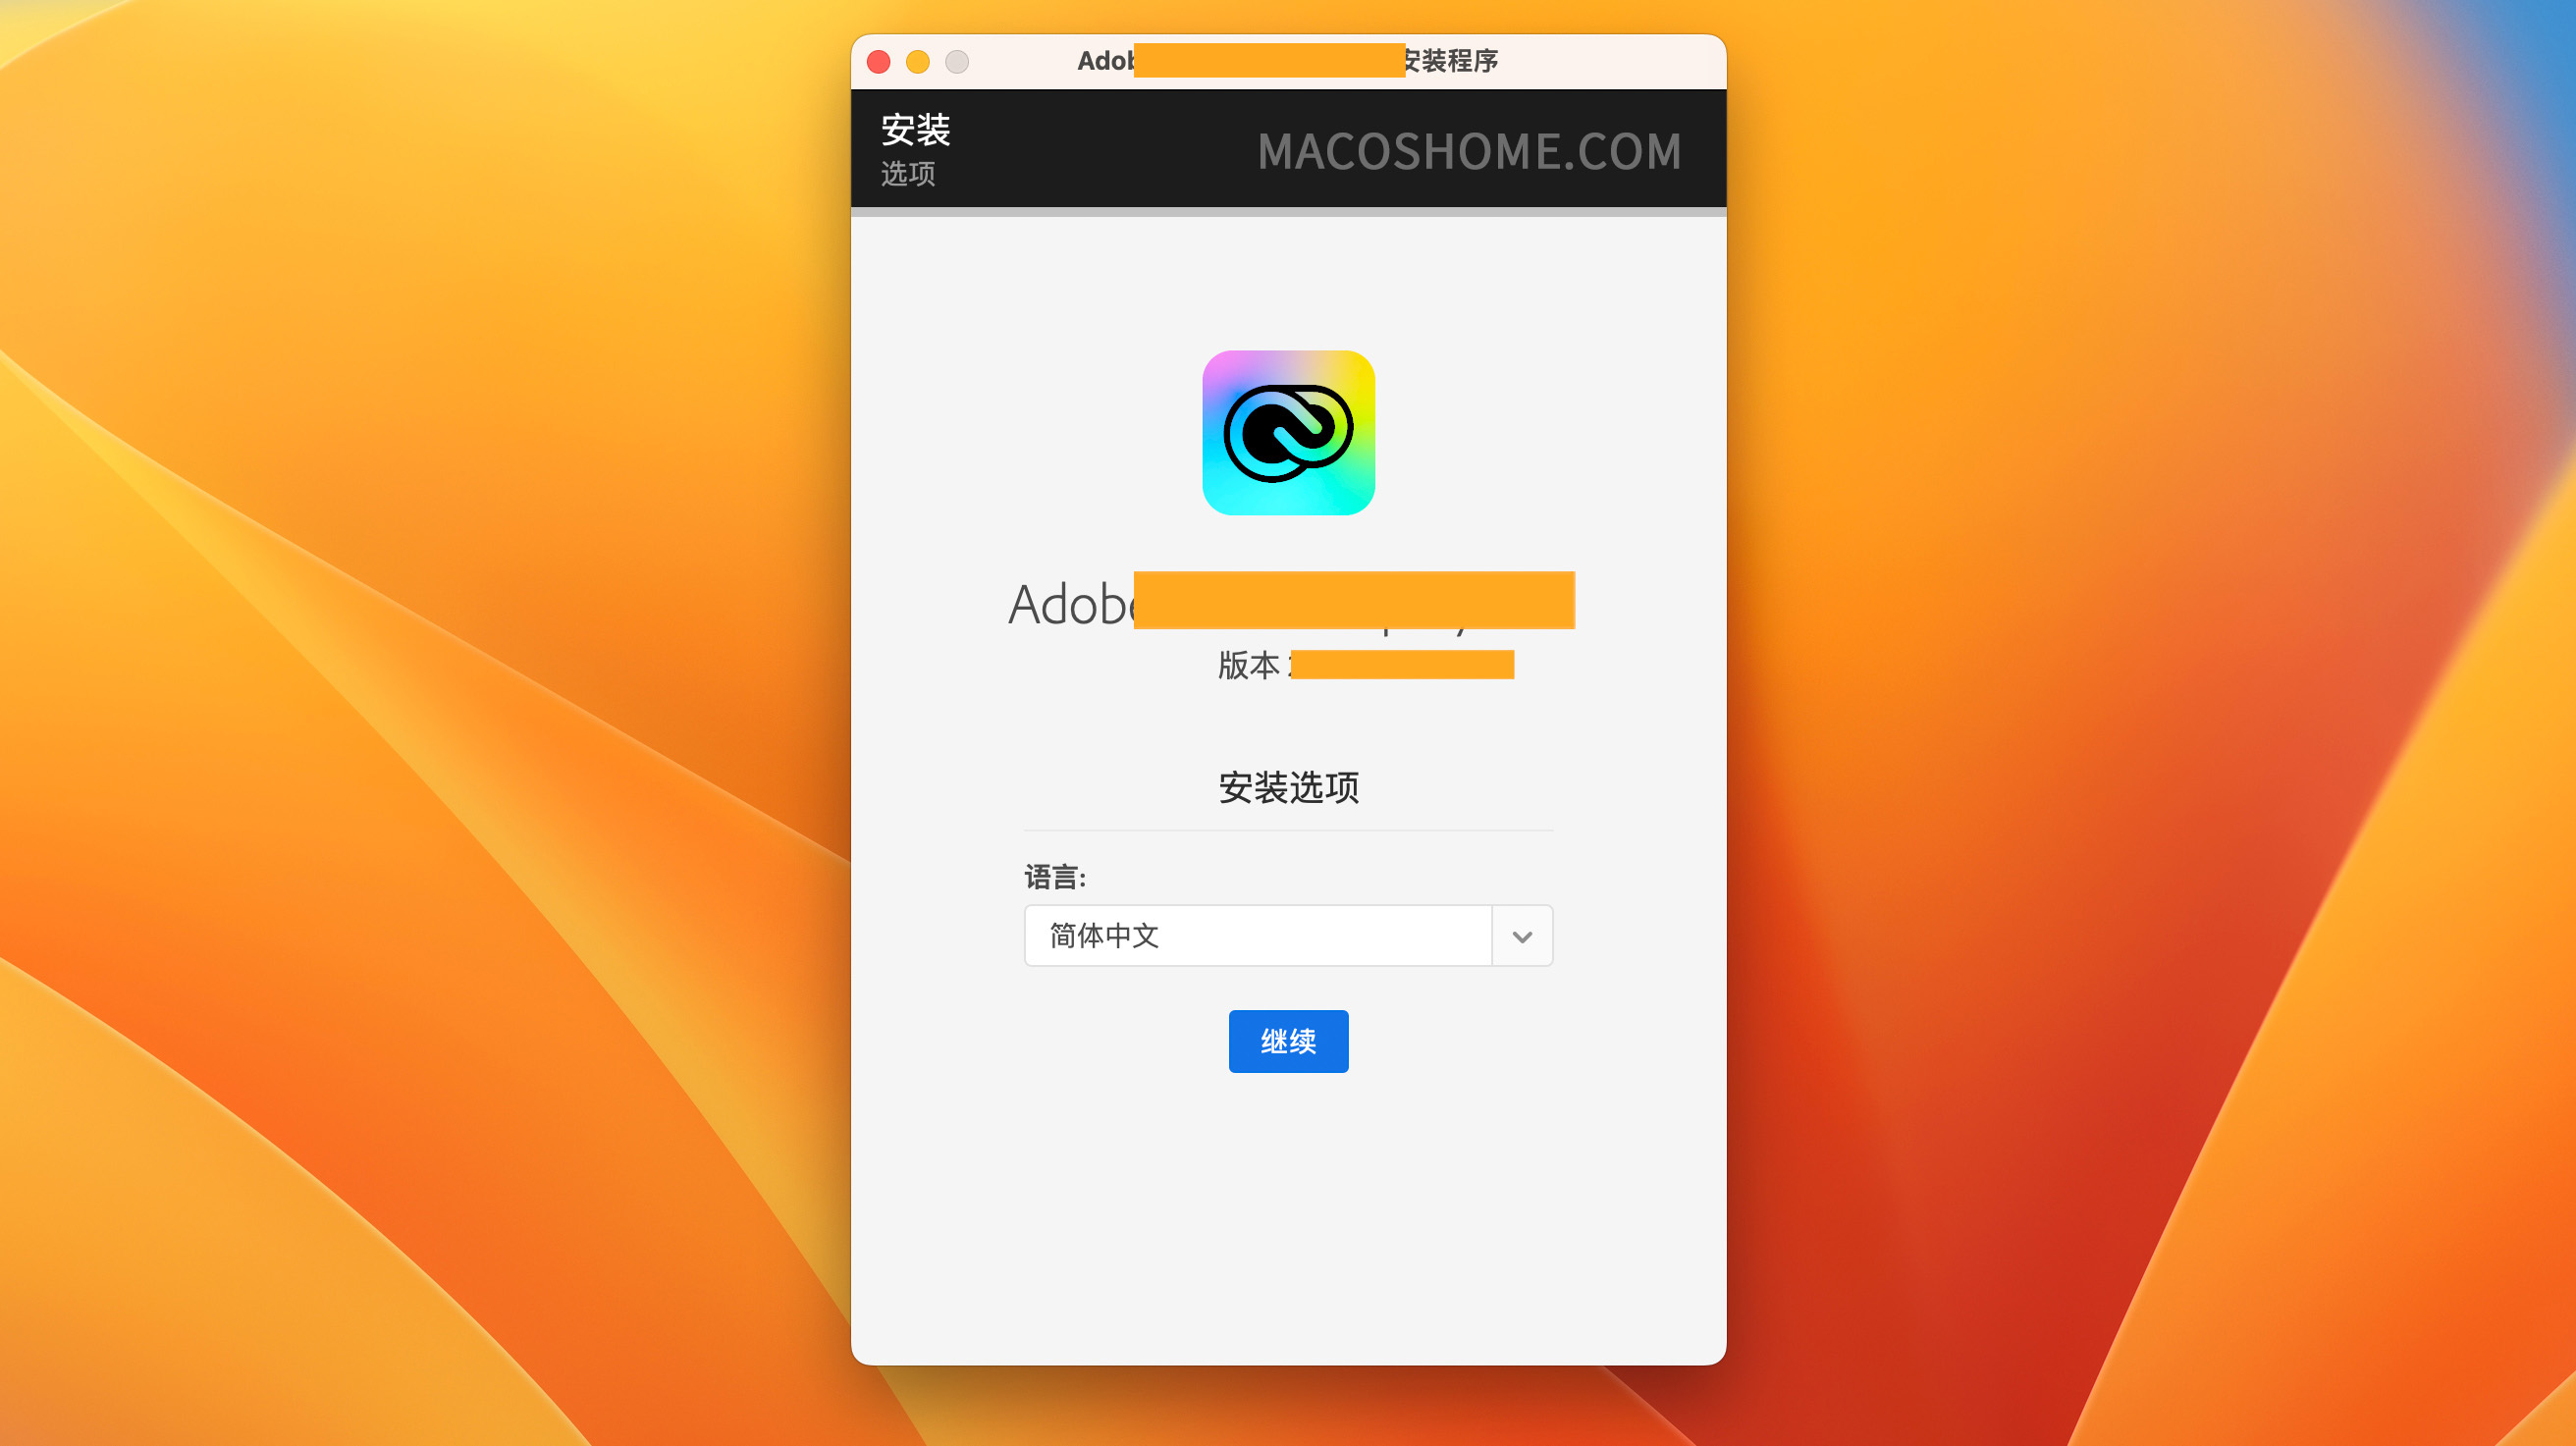 Adobe Premiere Pro 2022 For Mac v22.6.2 Pr中文版